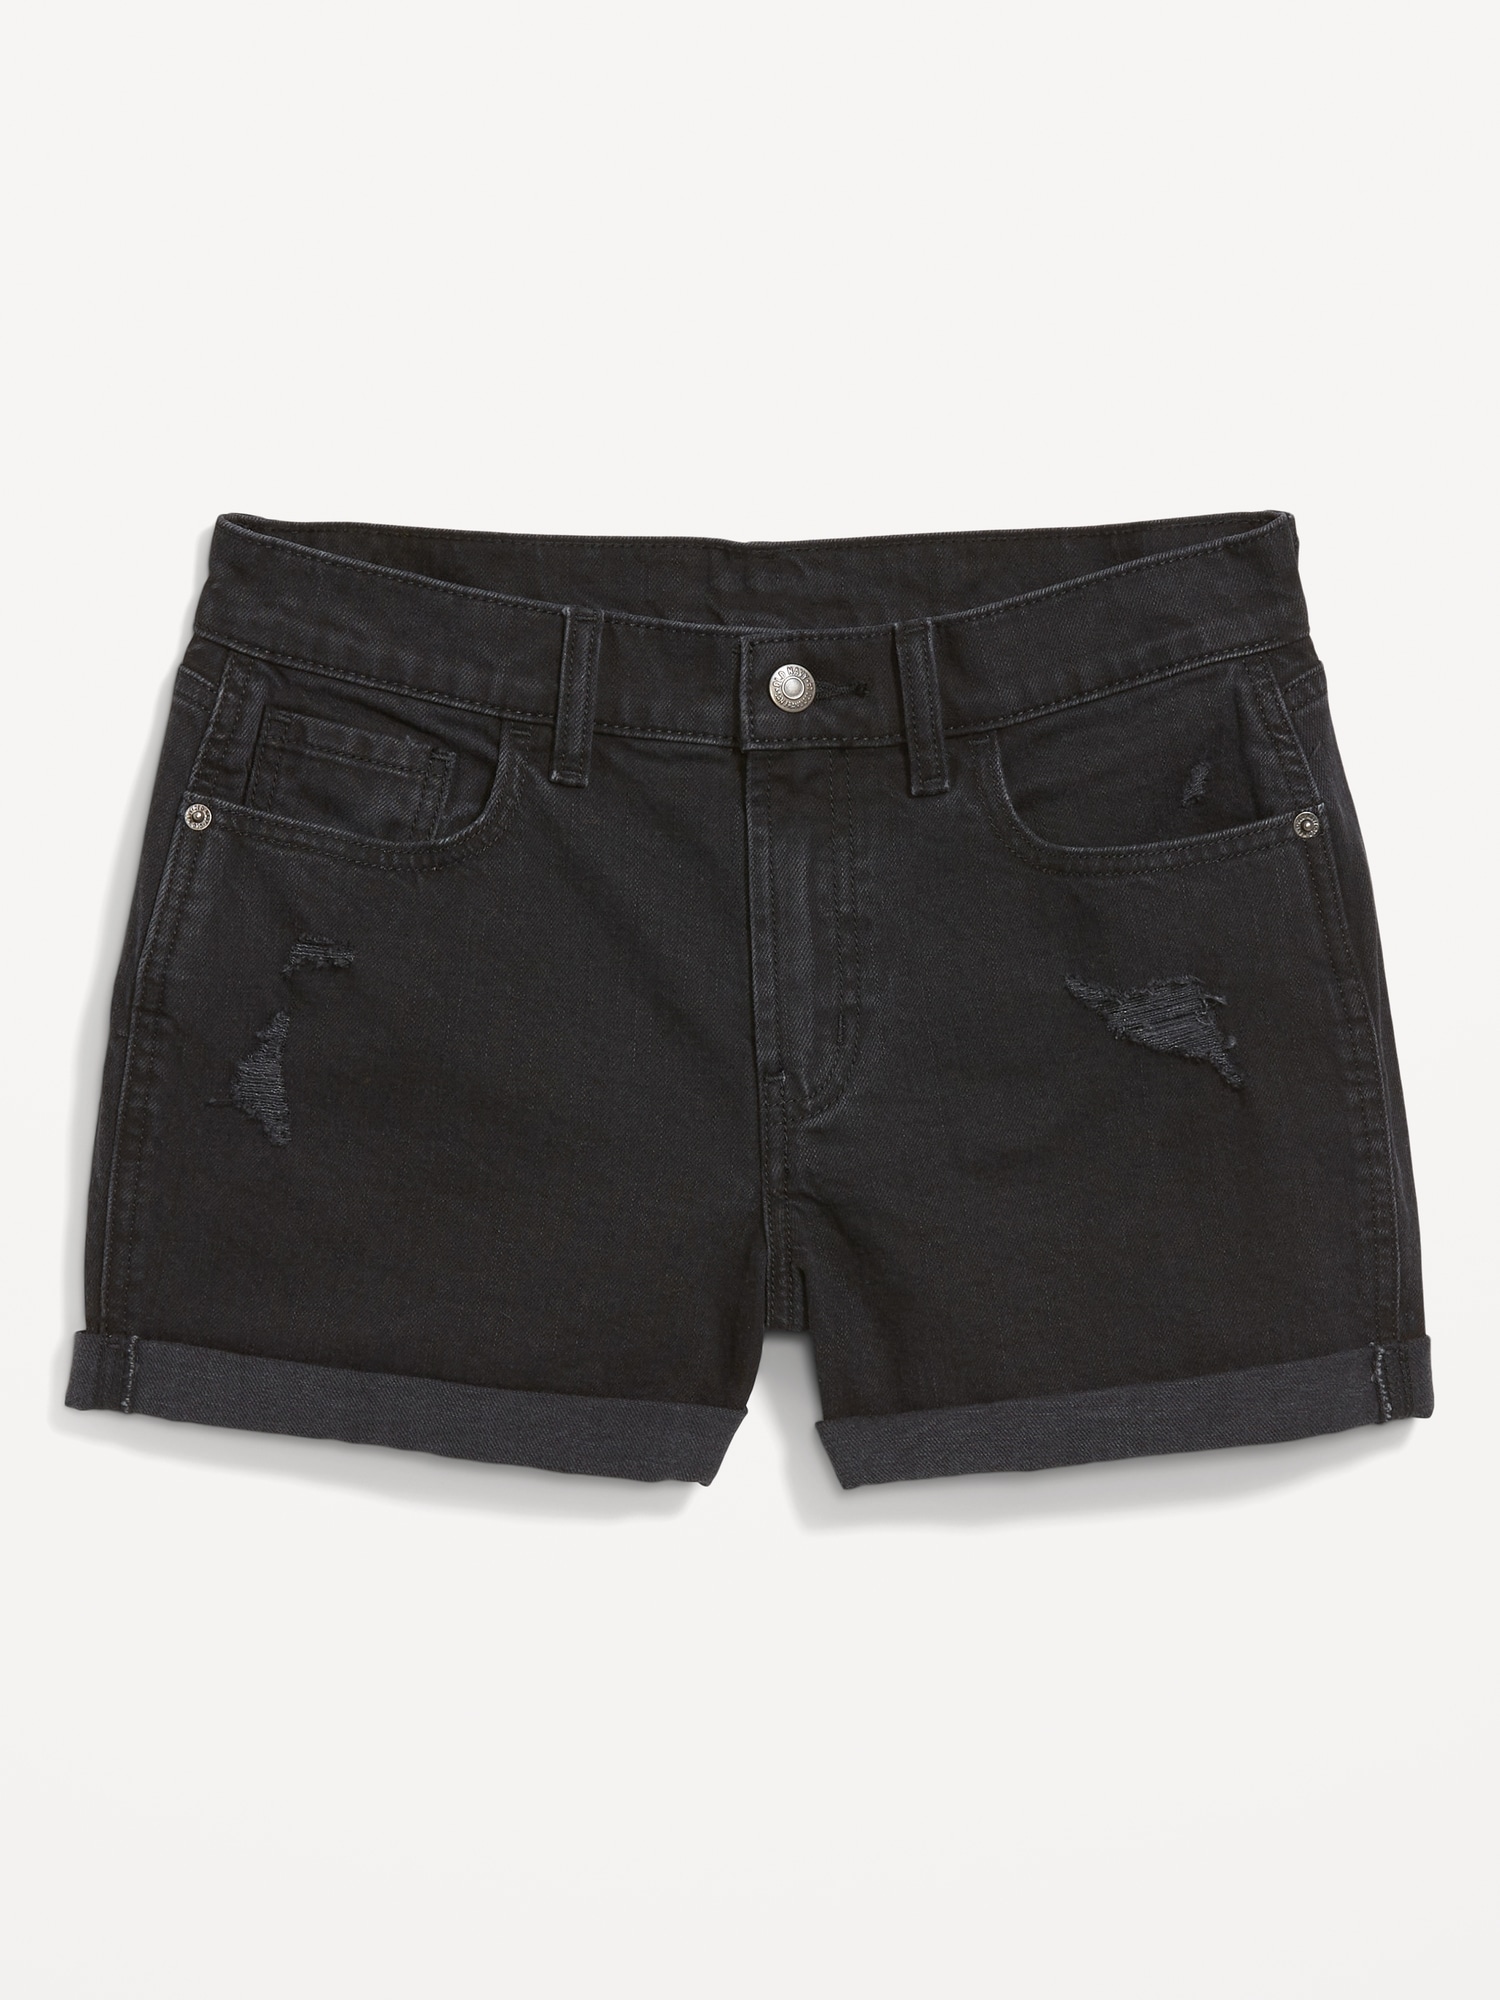 Aeropostale Denim Shorts 3/4 Womens Low Rise Cuffed Dark Wash Raw Hem | eBay